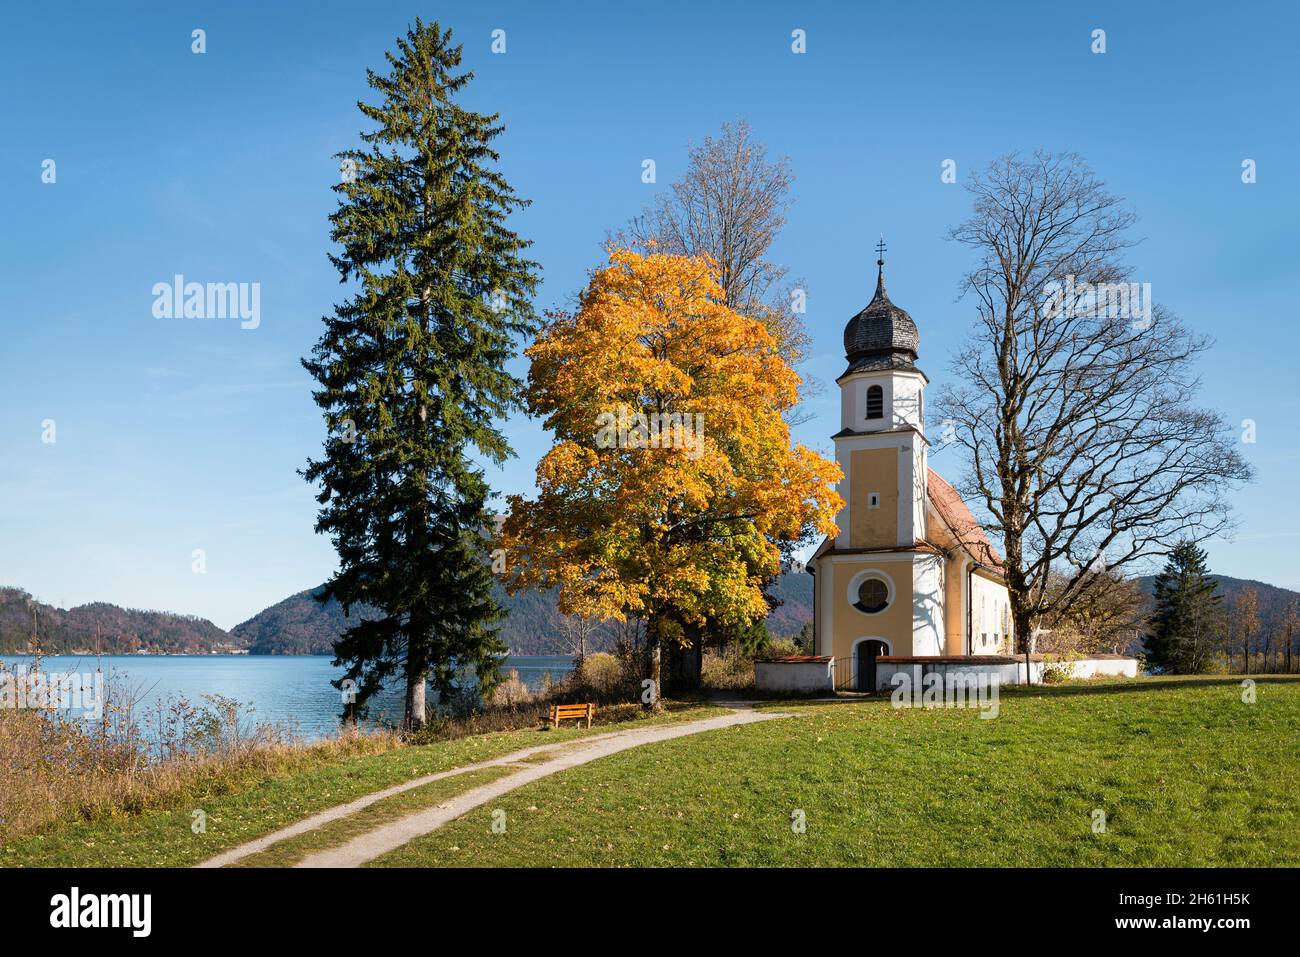 L'église baroque de Saint Margareth sur la péninsule de Zwergern dans le lac Walchen avec des arbres de couleur automnale, Bavière, Allemagne Banque D'Images